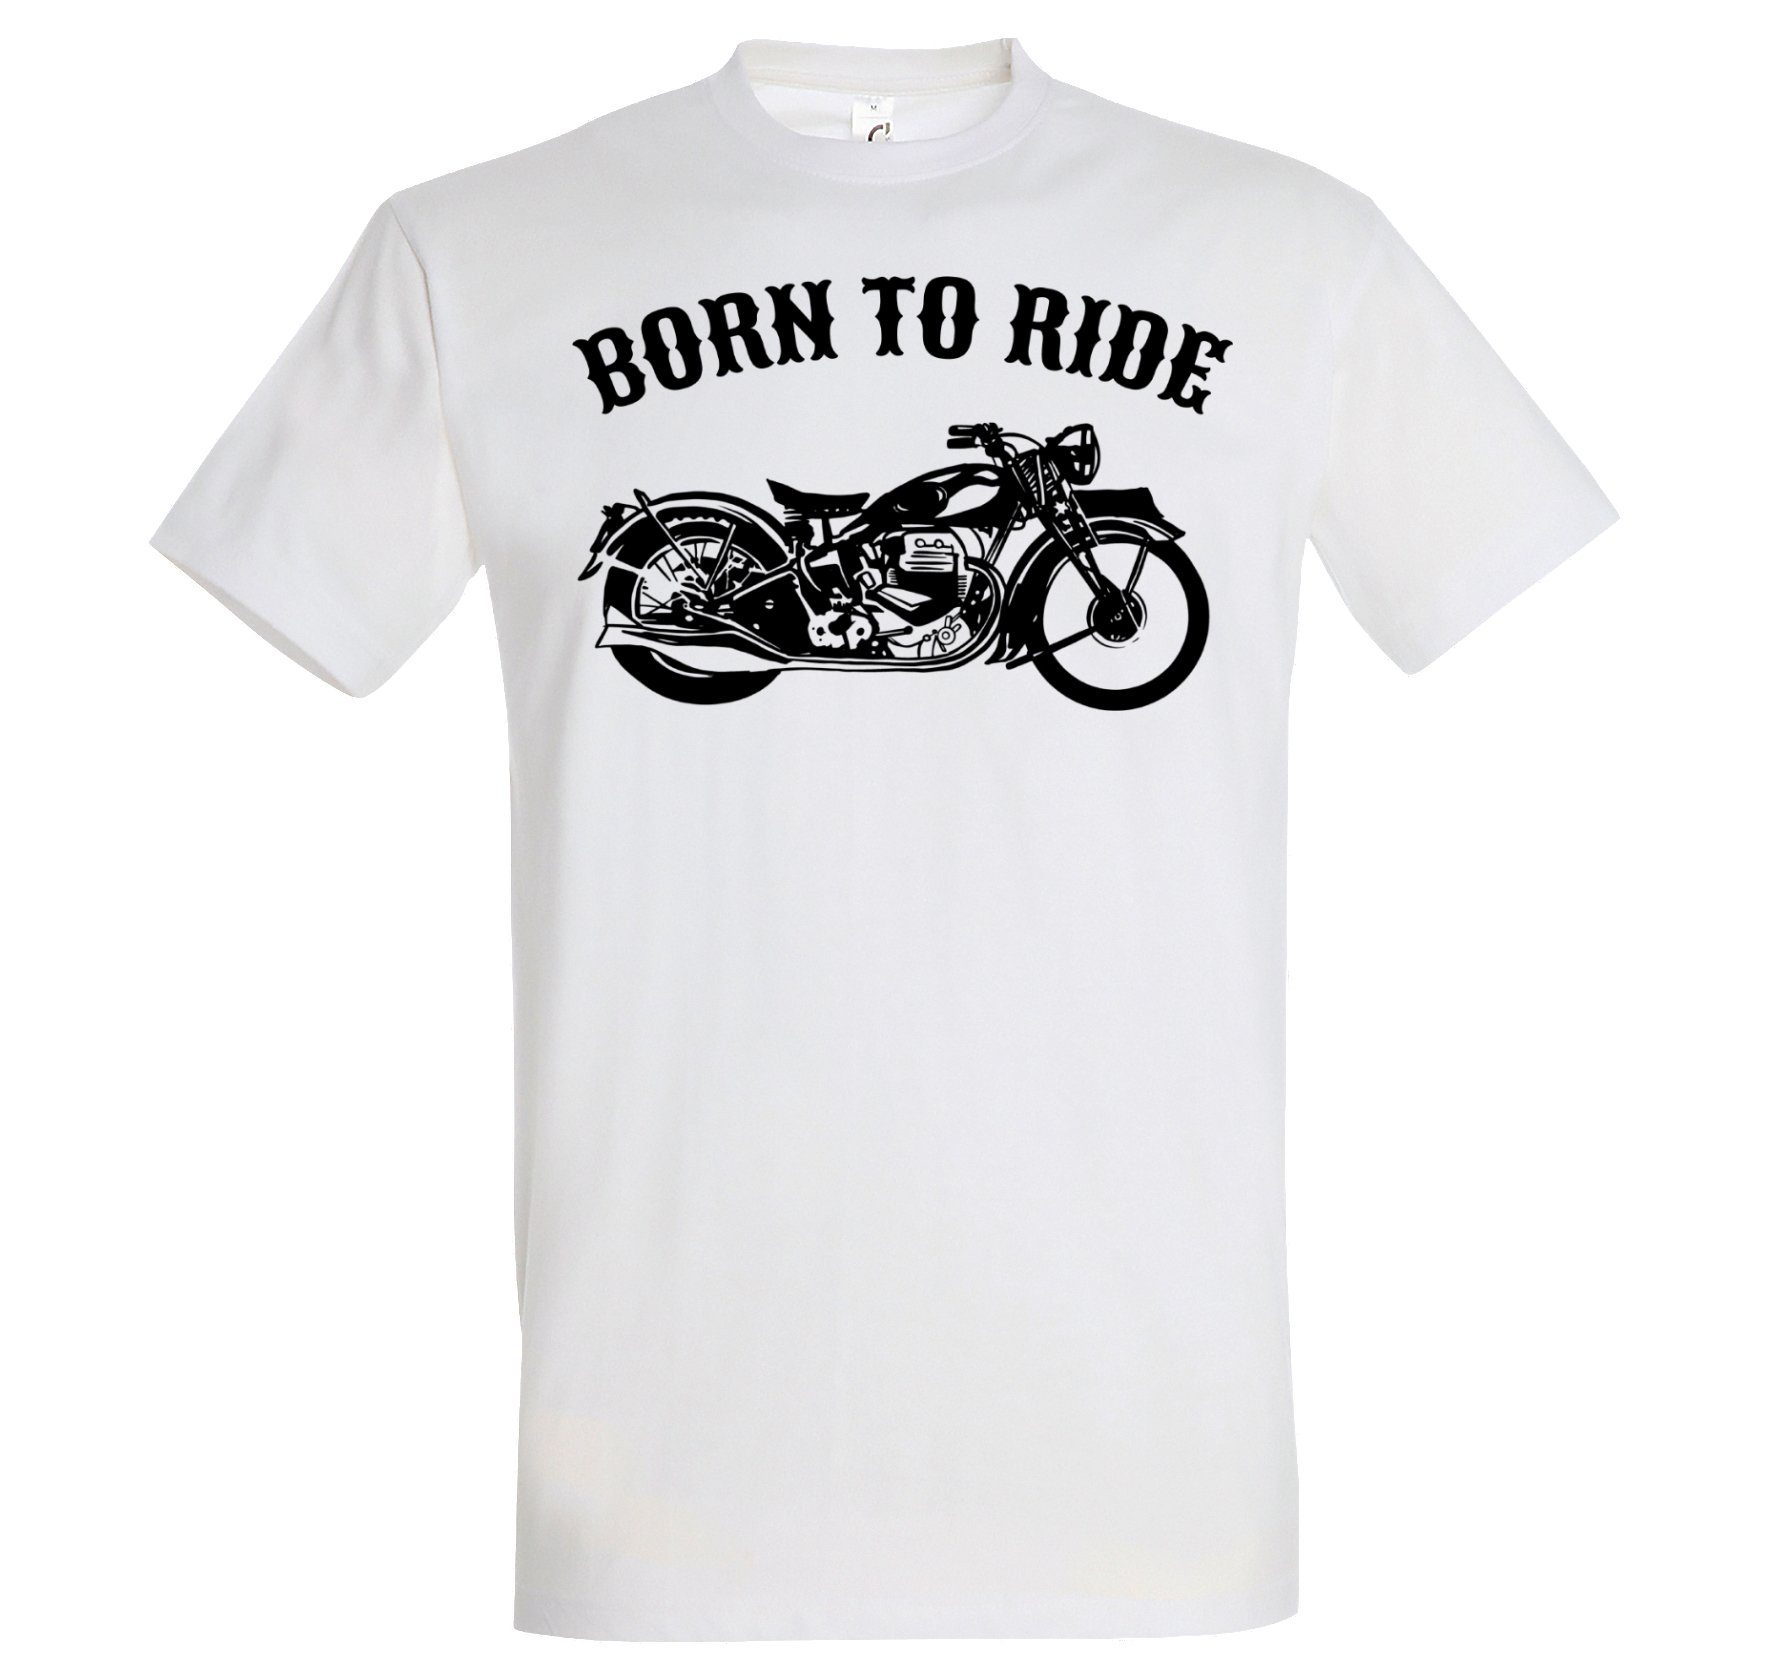 Designz mit T-Shirt Motorrad Ride modischem To Print-Shirt Biker Youth Herren Weiß Born Print Spruch